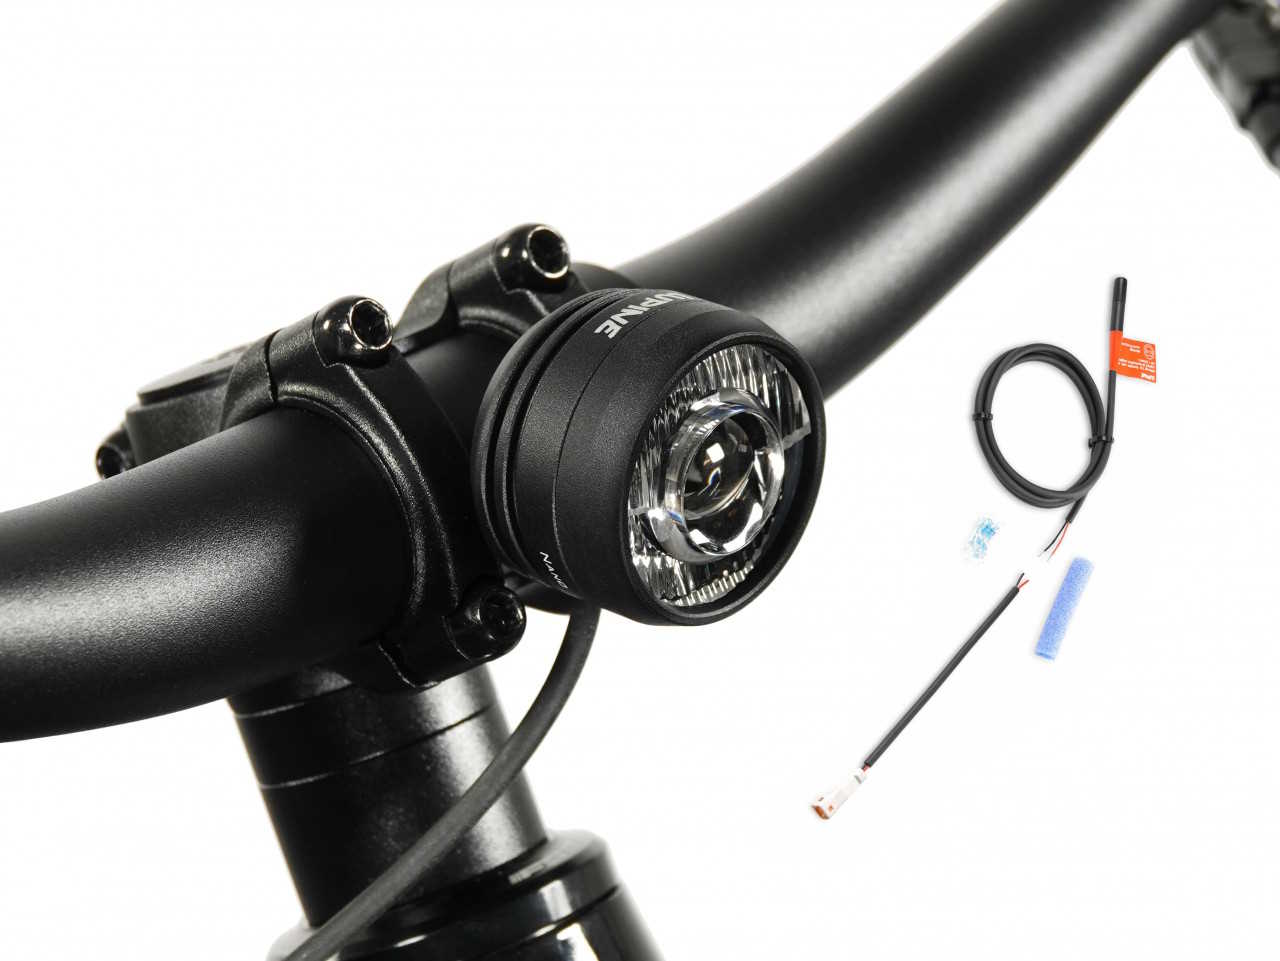 Produktbild von Lupine SL Nano für E-Bikes mit Giant Motor, E-Bike Beleuchtung mit 900 Lumen Fernlicht, Lenkerhalter 35mm + Bluetooth Fernbedienung